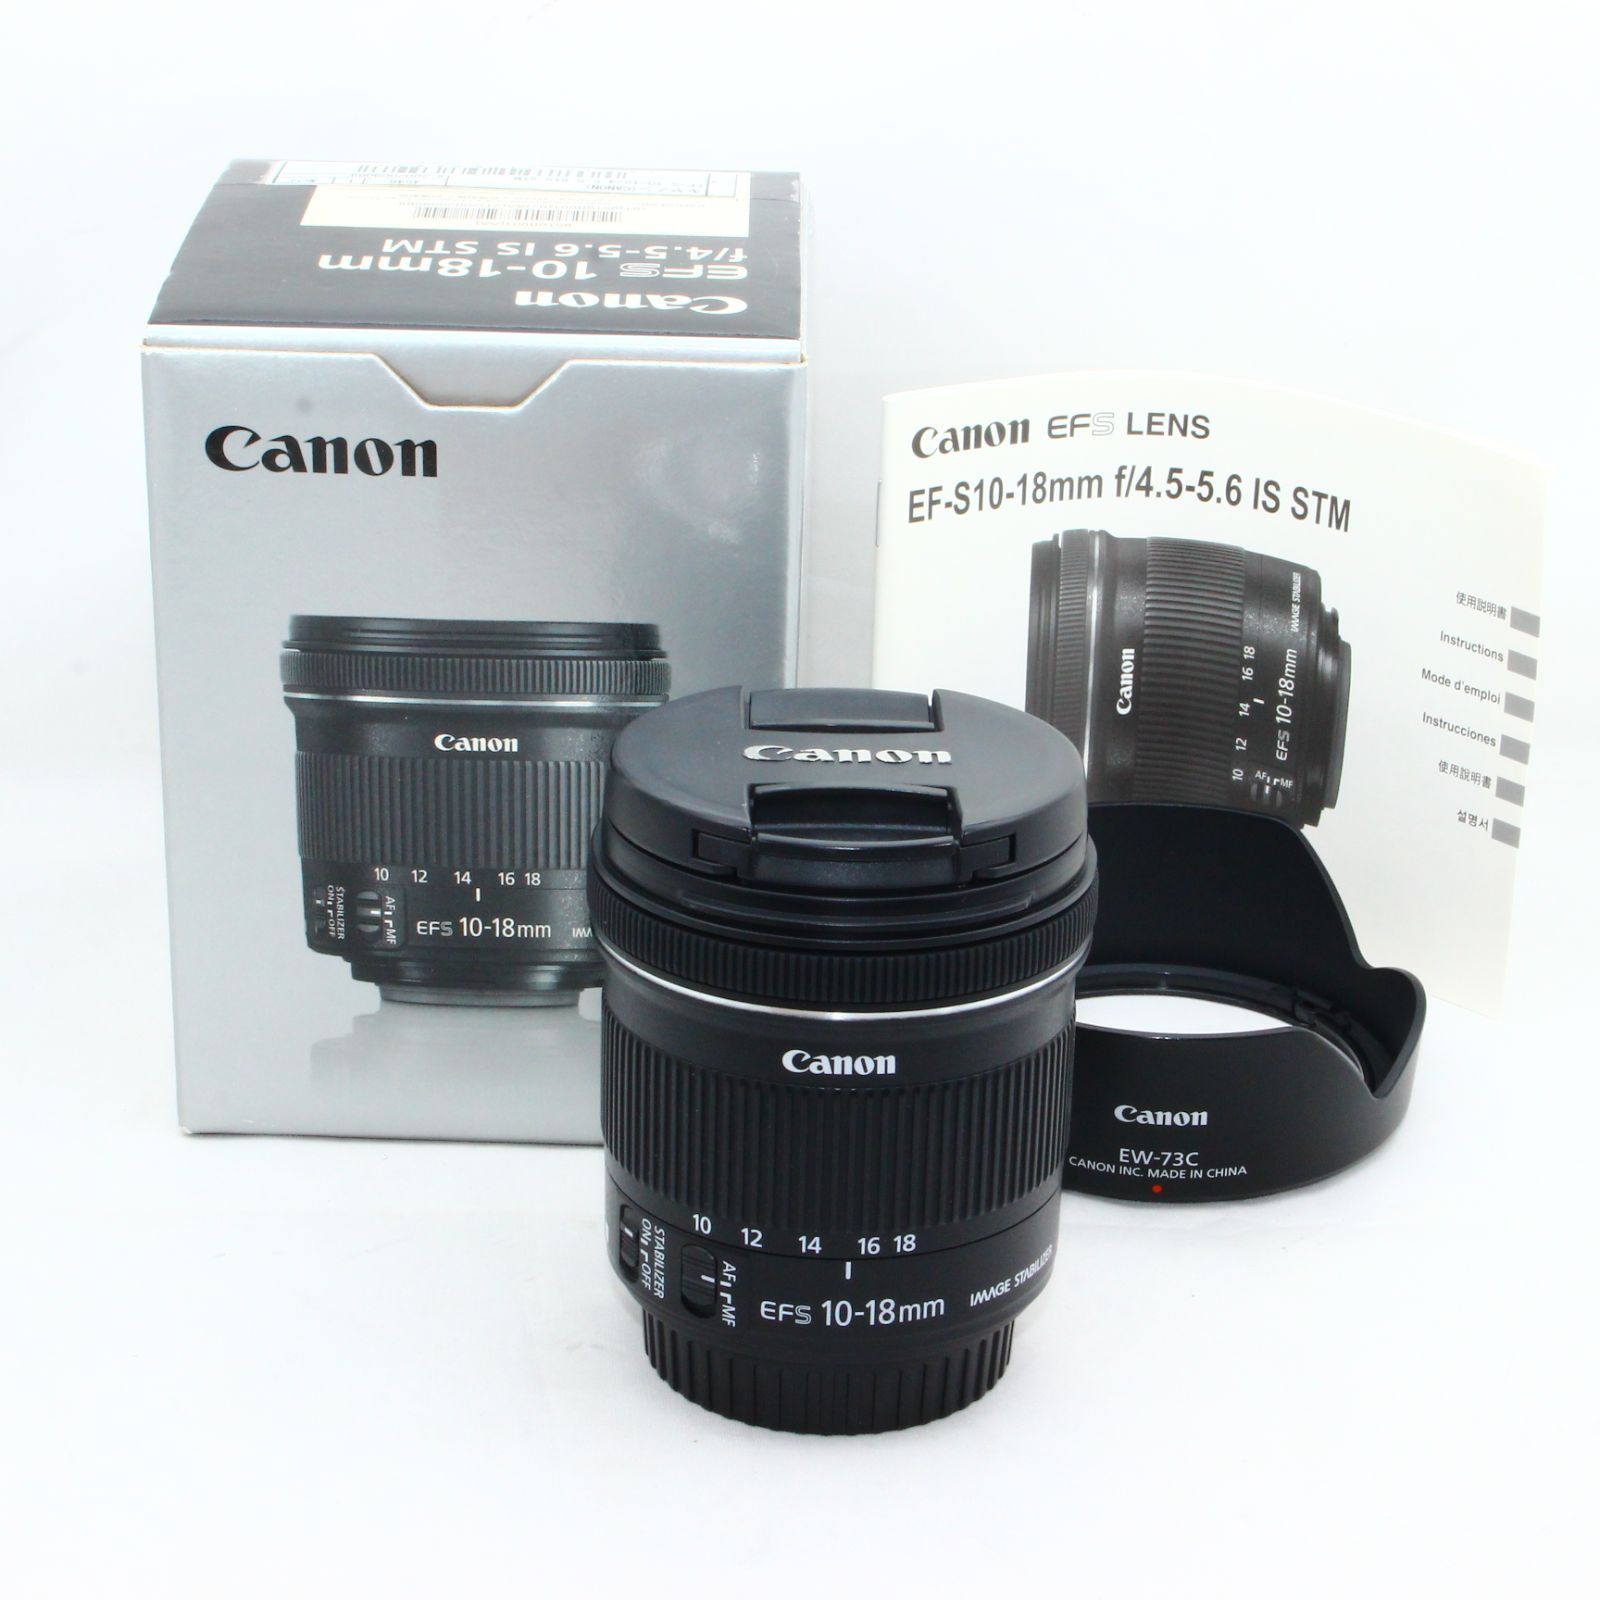 Canon 超広角ズームレンズ EF-S10-18mm F4.5-5.6 IS STM